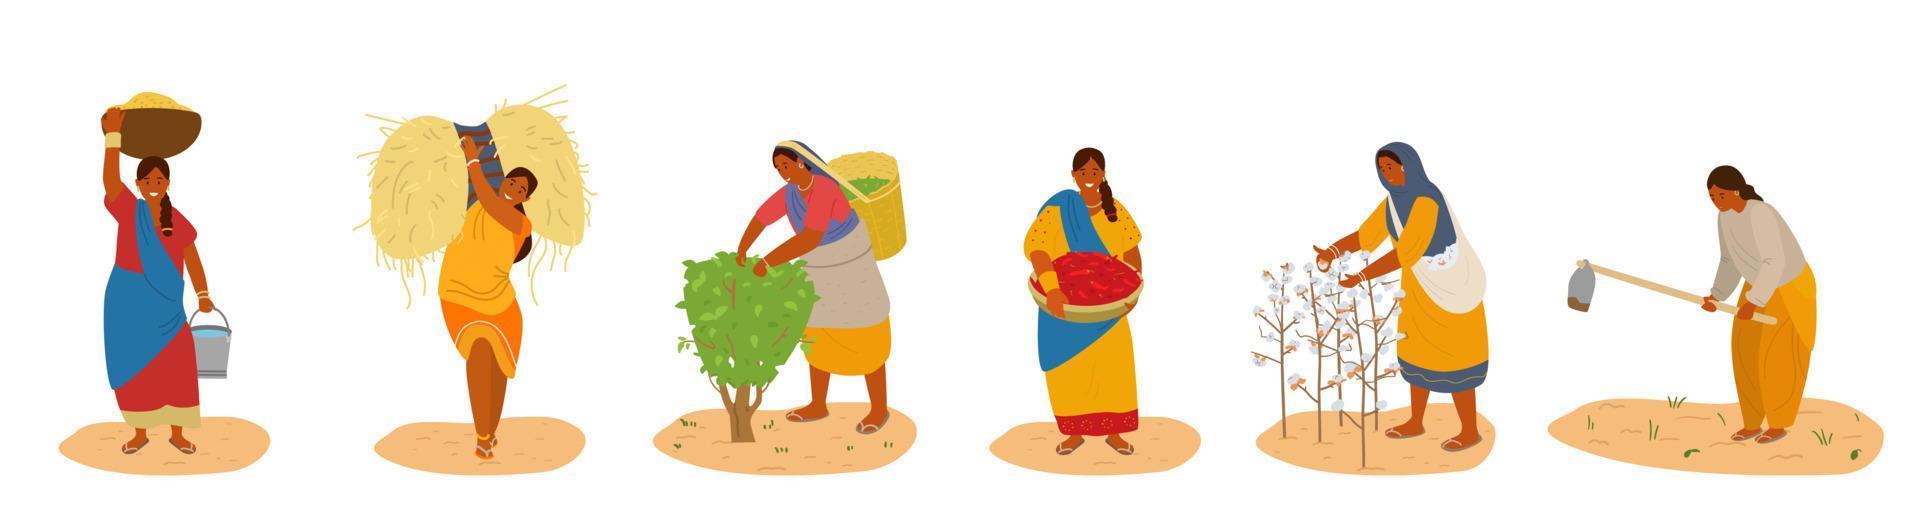 conjunto vectorial de mujeres indias trabajando. cosechar algodón, chile, maíz, trigo, recoger hojas de té, arar. agricultura tradicional. aislado en blanco vector